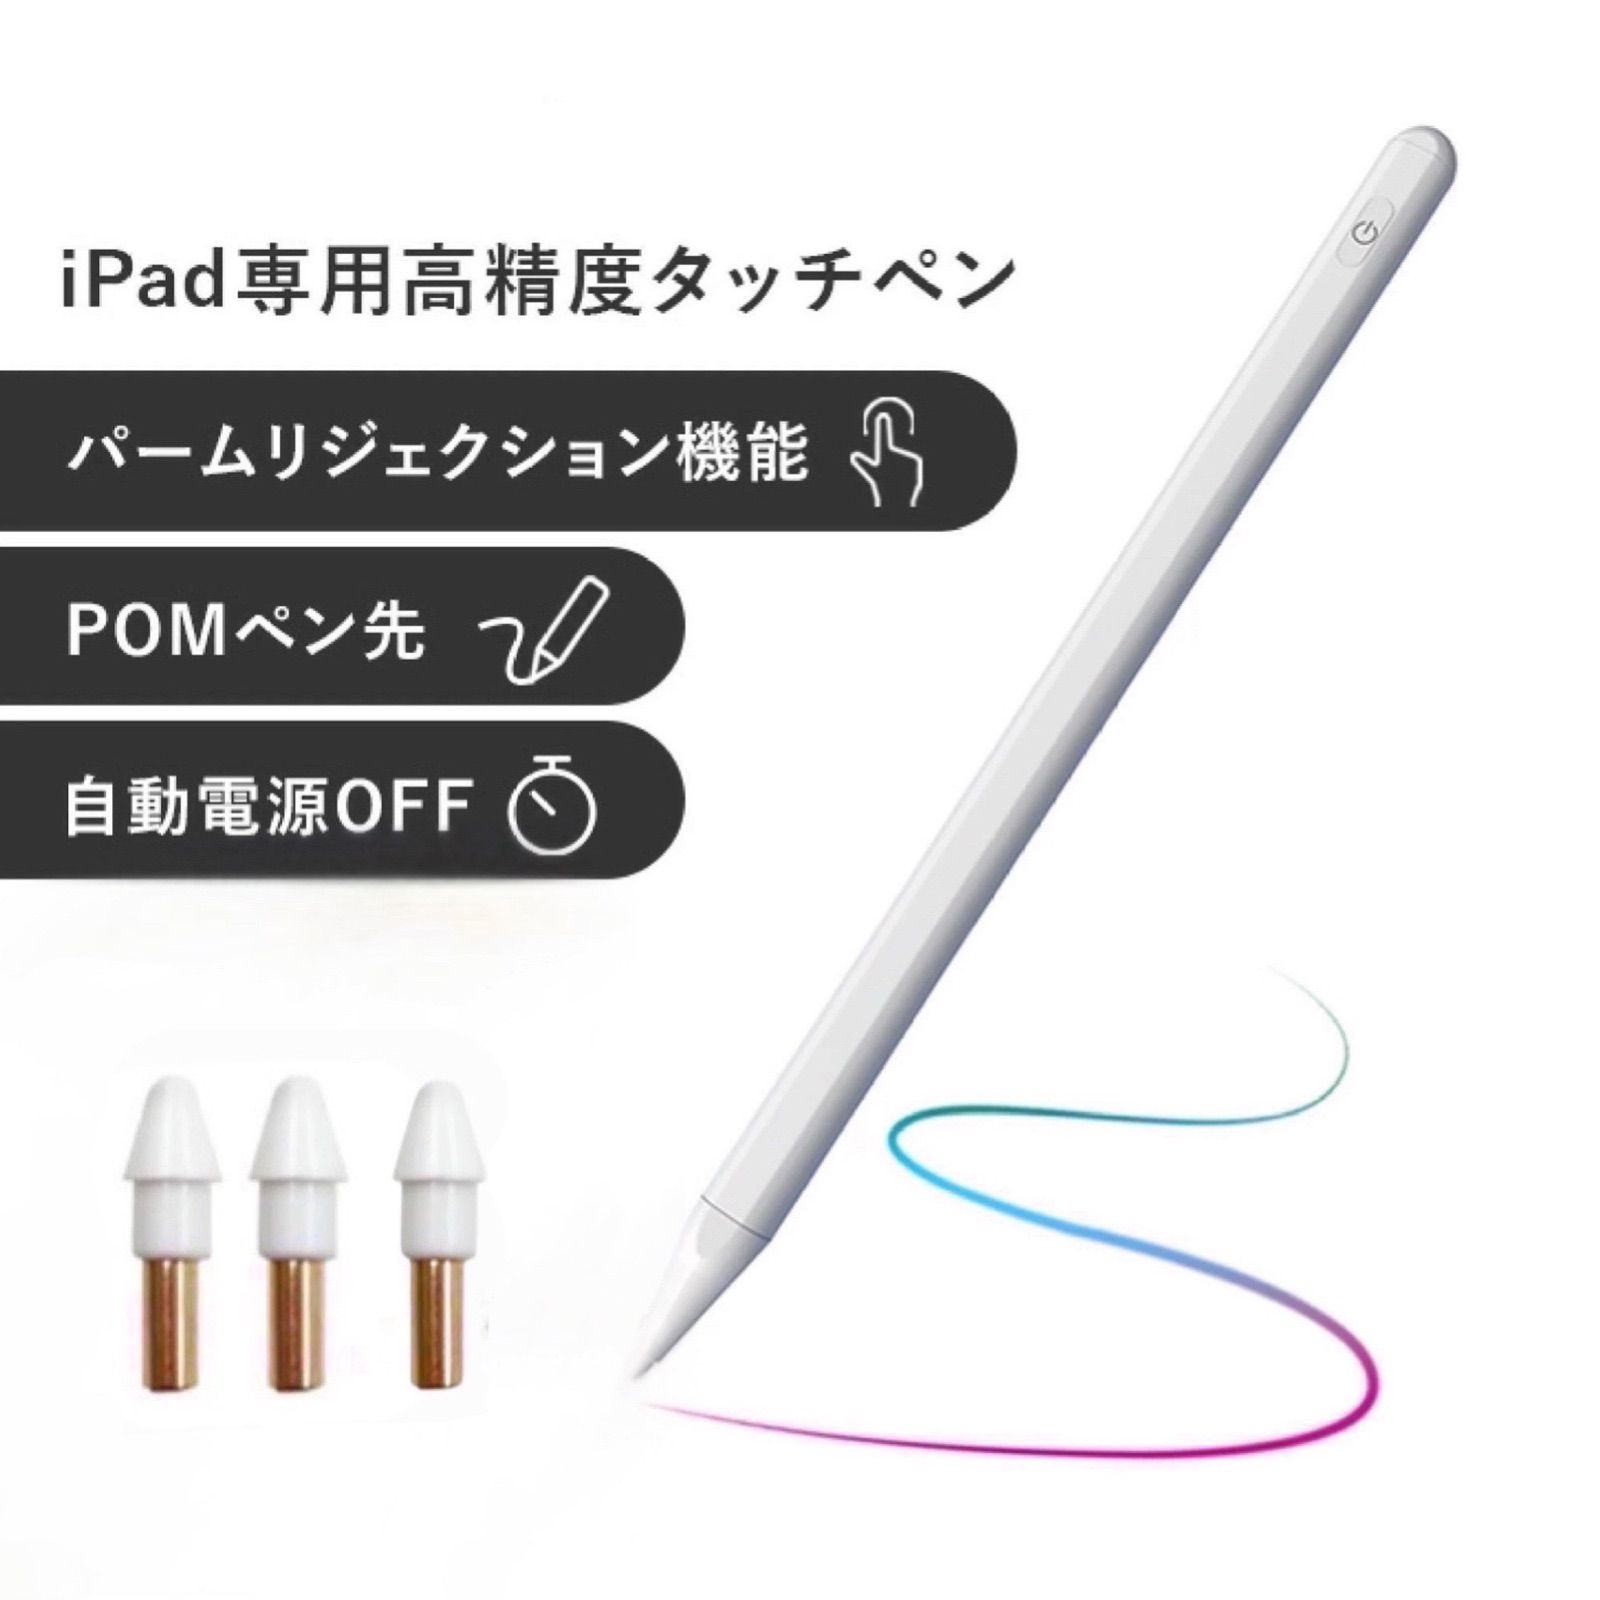 名作 新品未使用 iPadタッチペン stylus pen 桜色